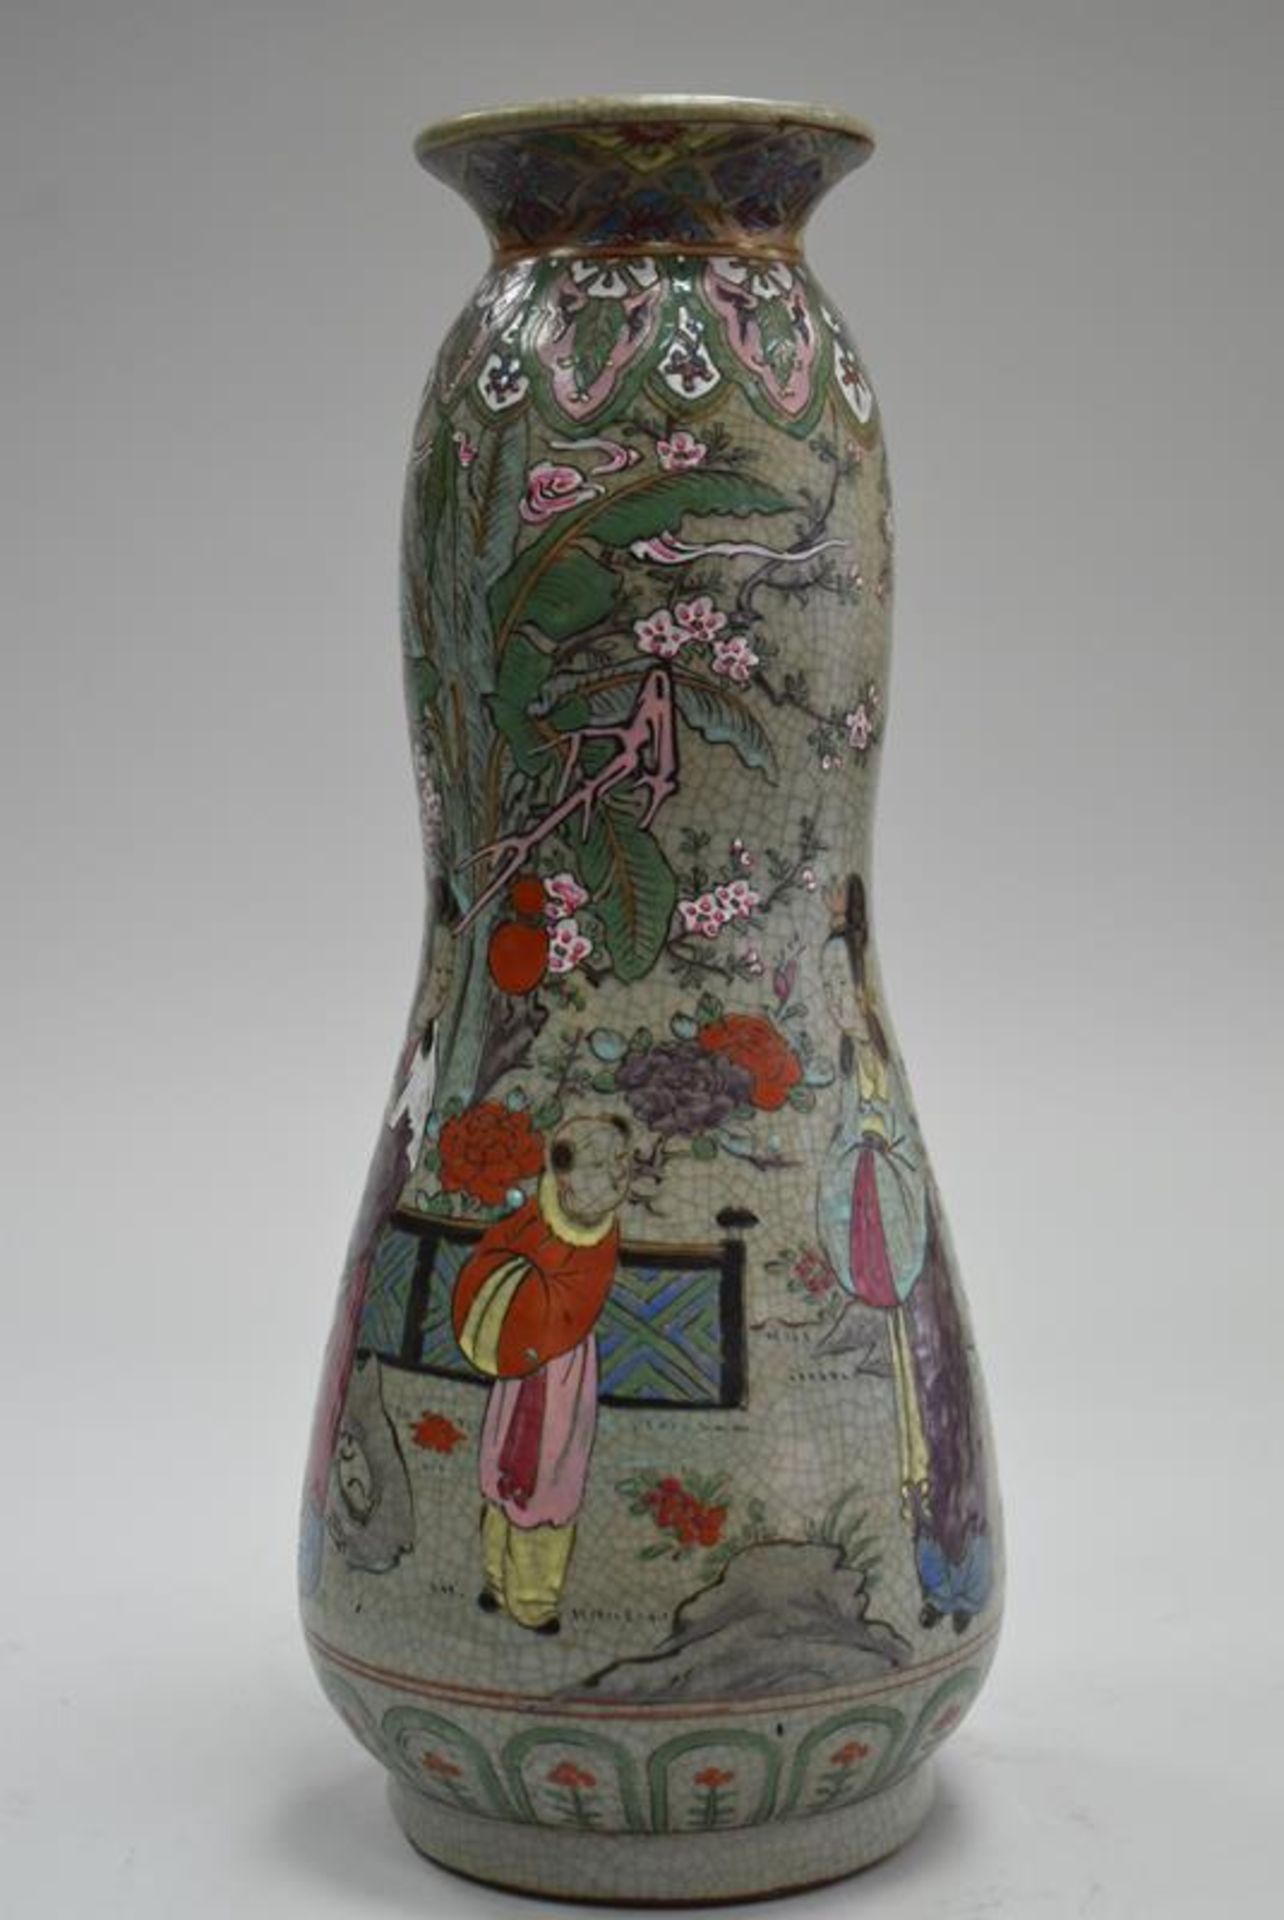 Chinesische Keramikvase um 1900Mindestpreis 160Bezeichnung Chinesische Keramikvase um 1900